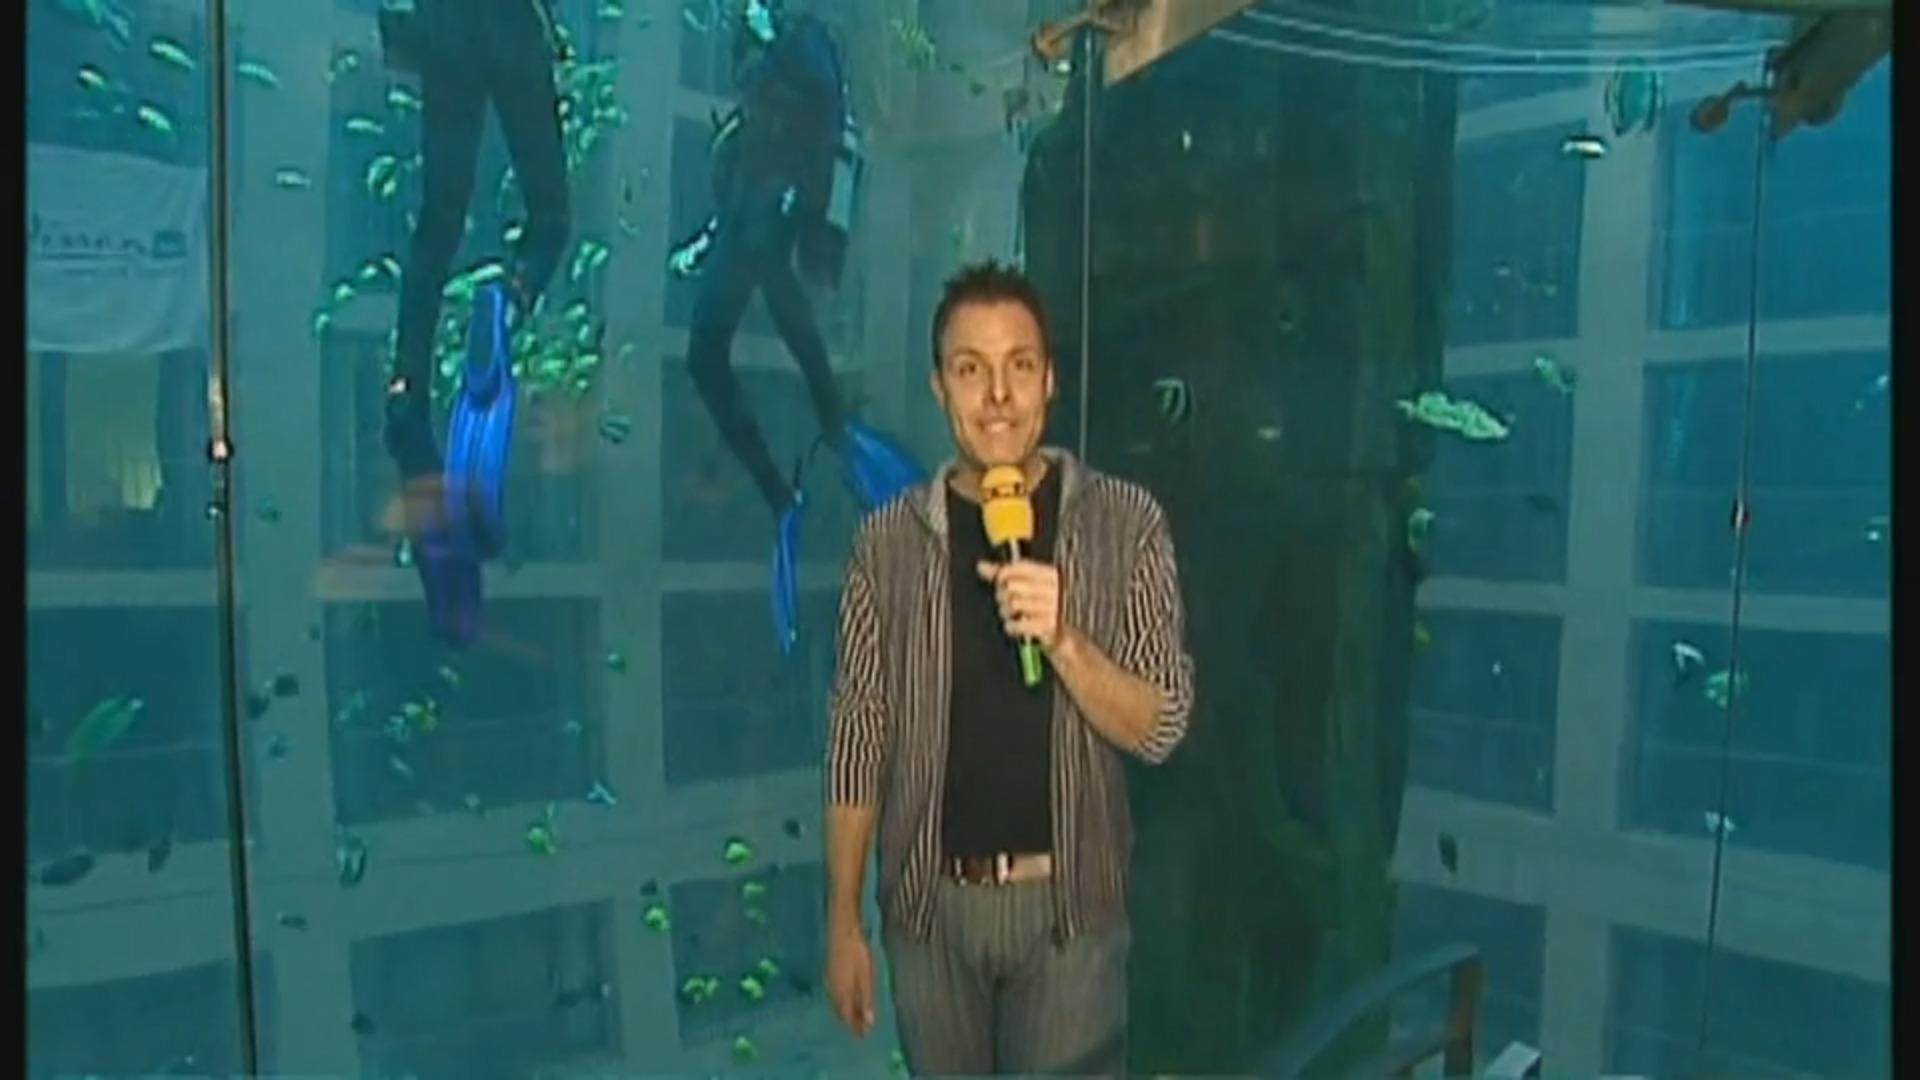 RTL-Reporter erklärt das Riesen-Aquarium Archiv-Video aus dem Februar 2004